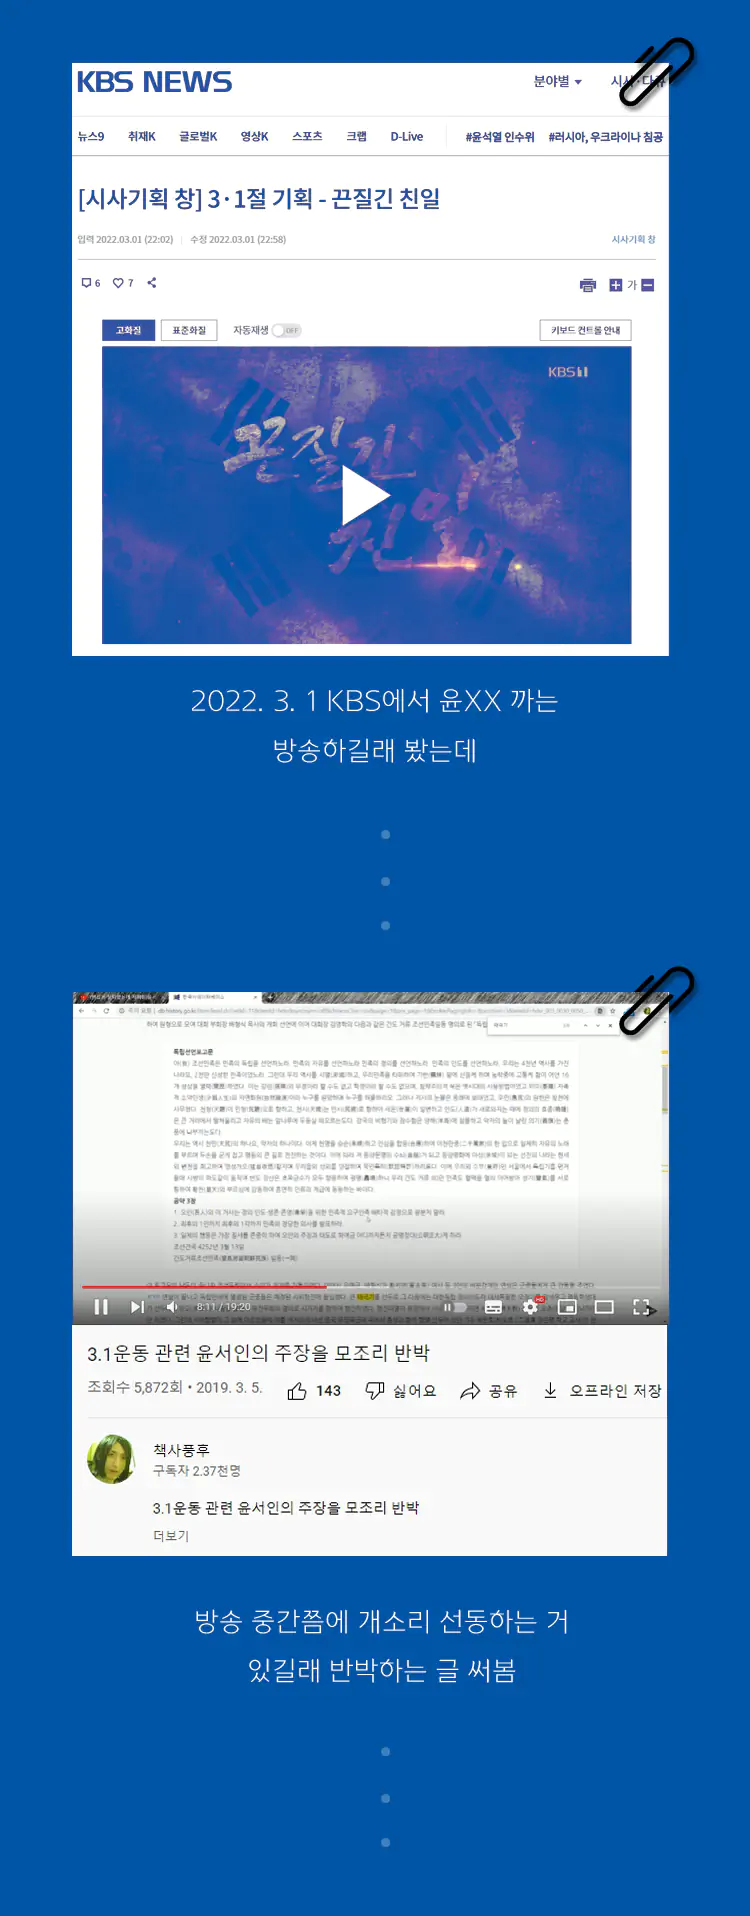 KBS 시사기획 창 프로그램의 가짜 뉴스